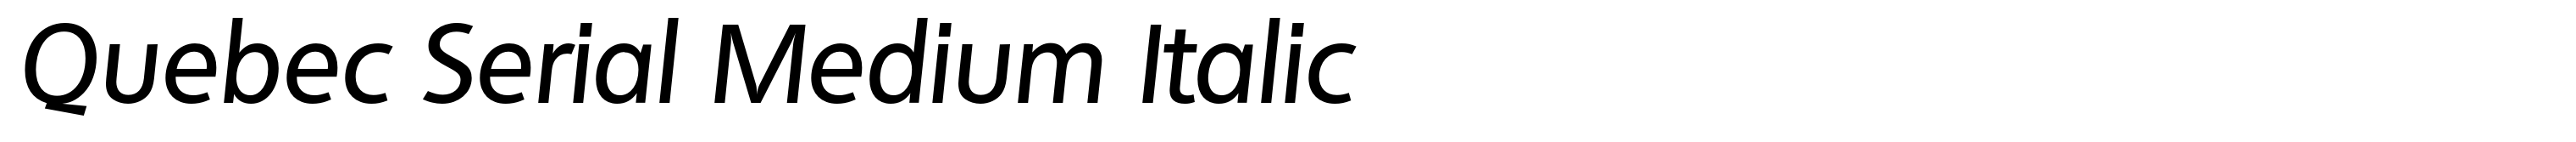 Quebec Serial Medium Italic